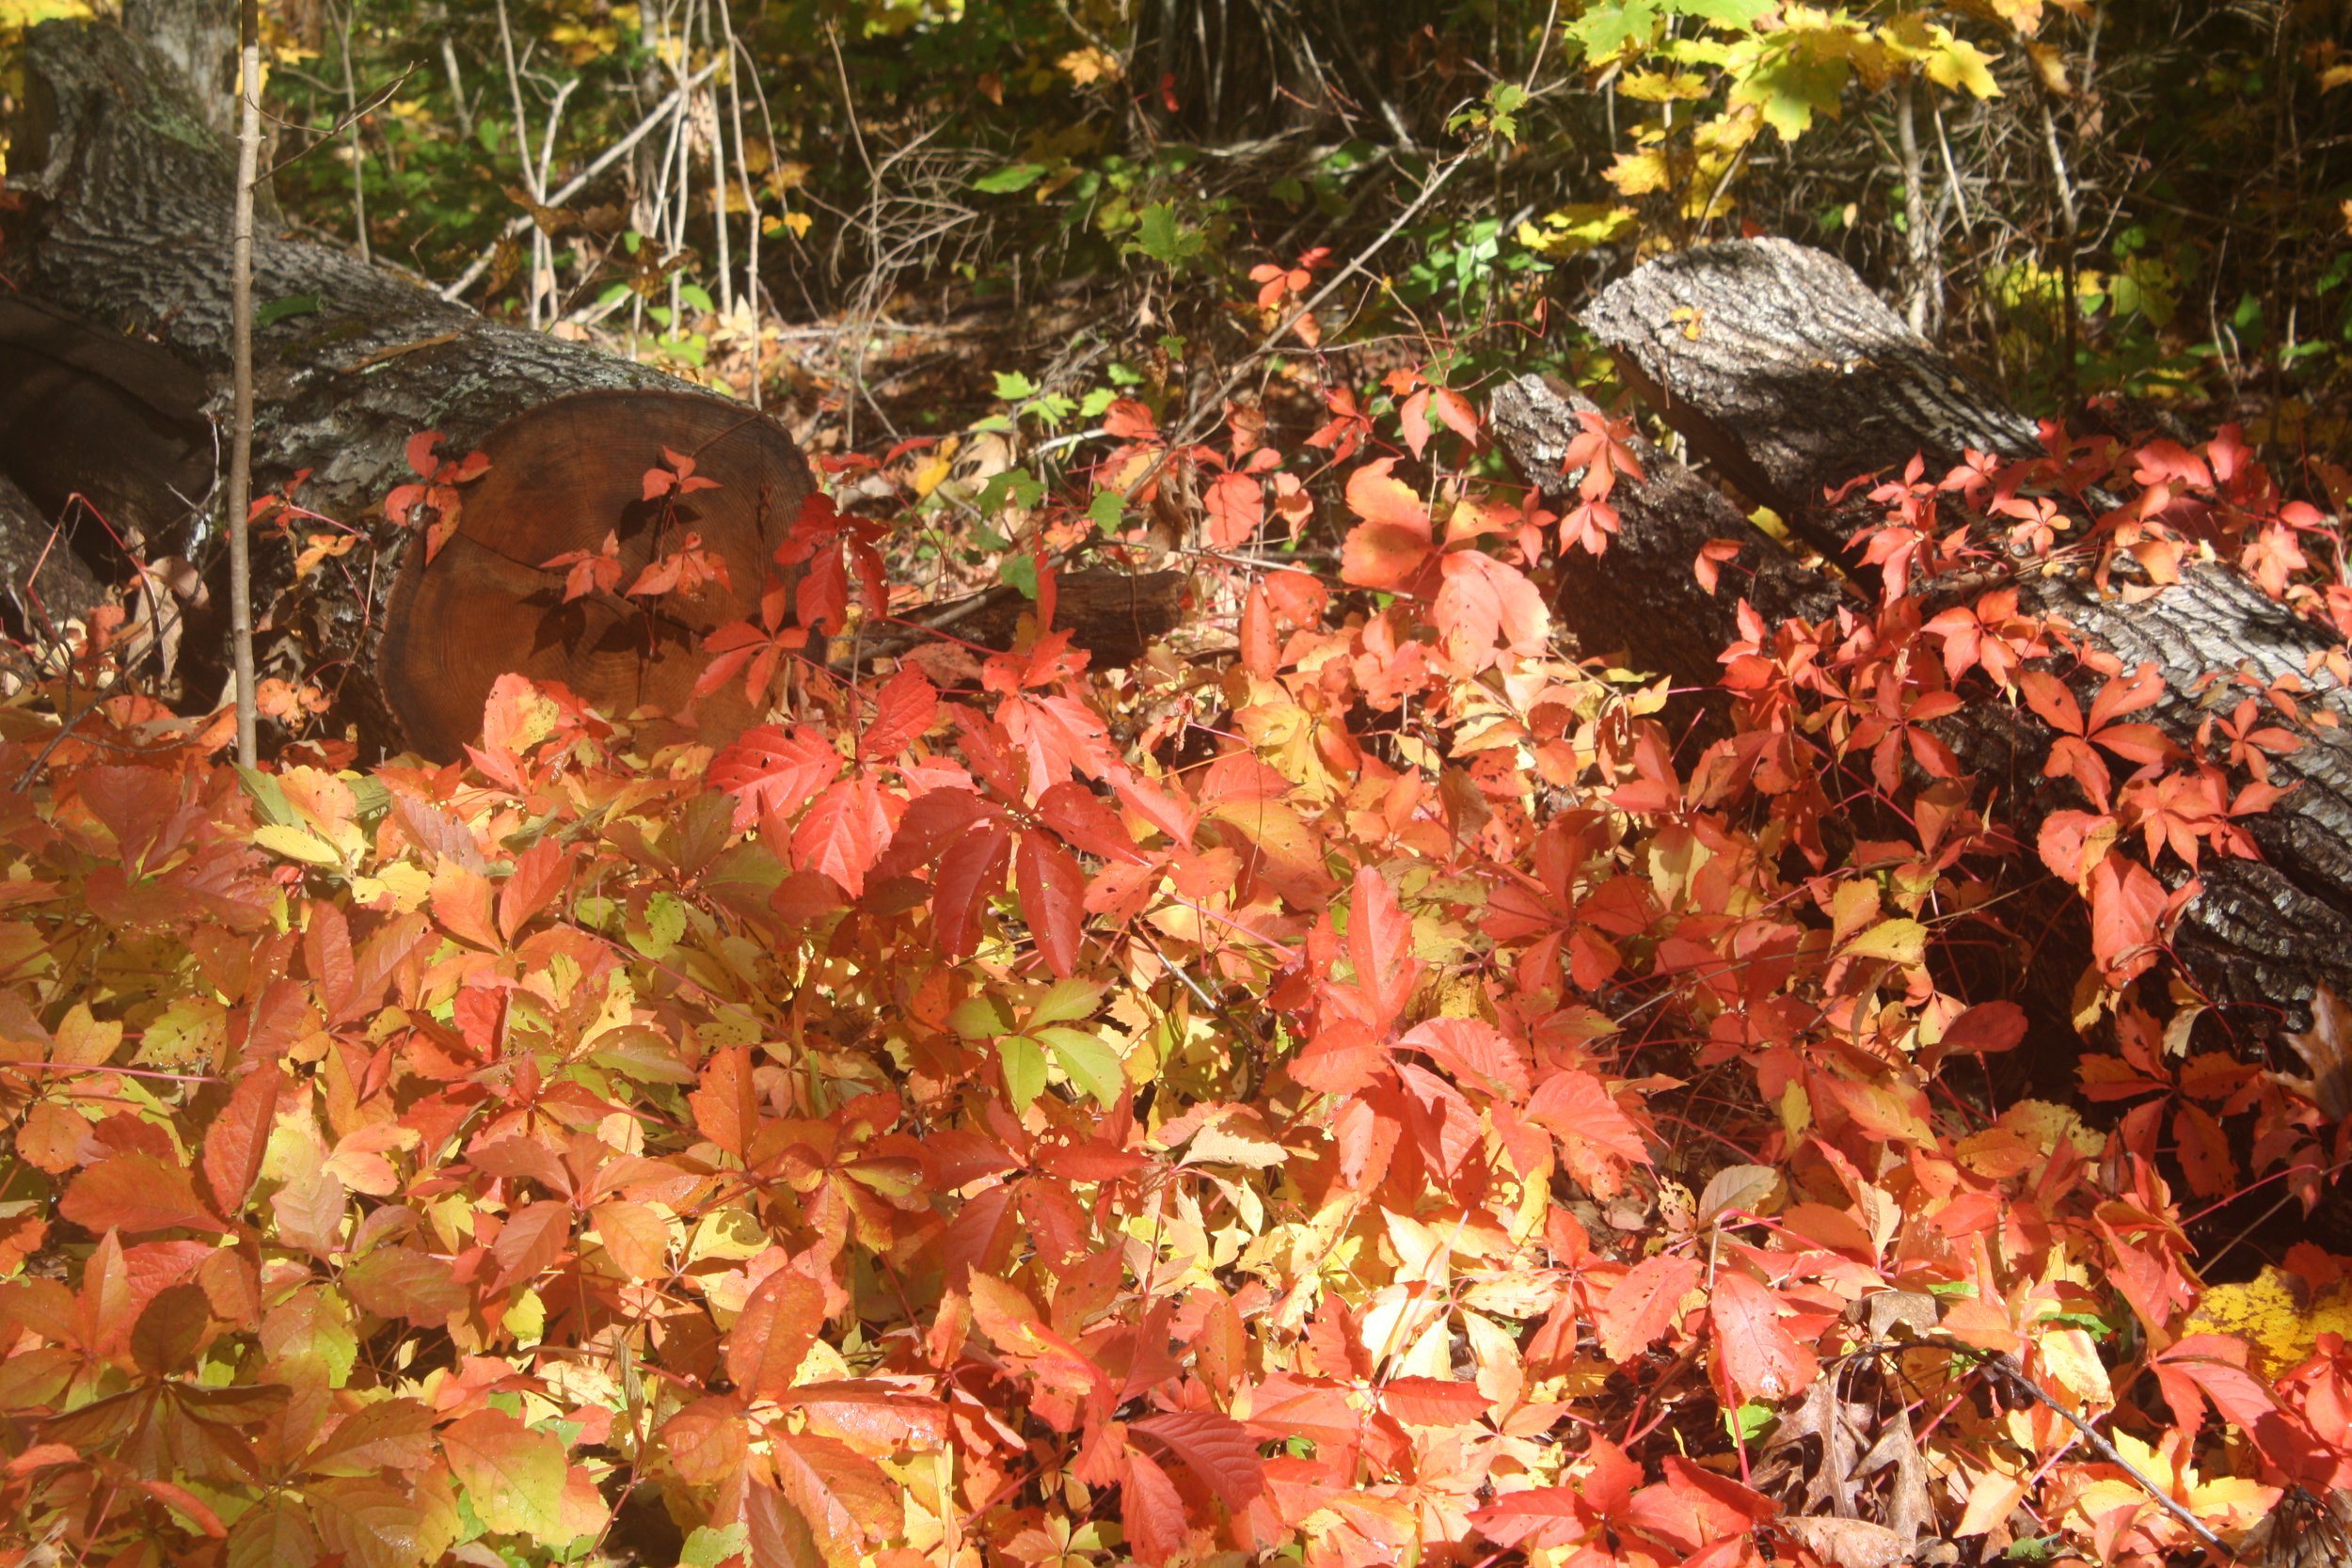 Virginia creeper (Parthenocissus quinquefolia) in its full autumn glory.